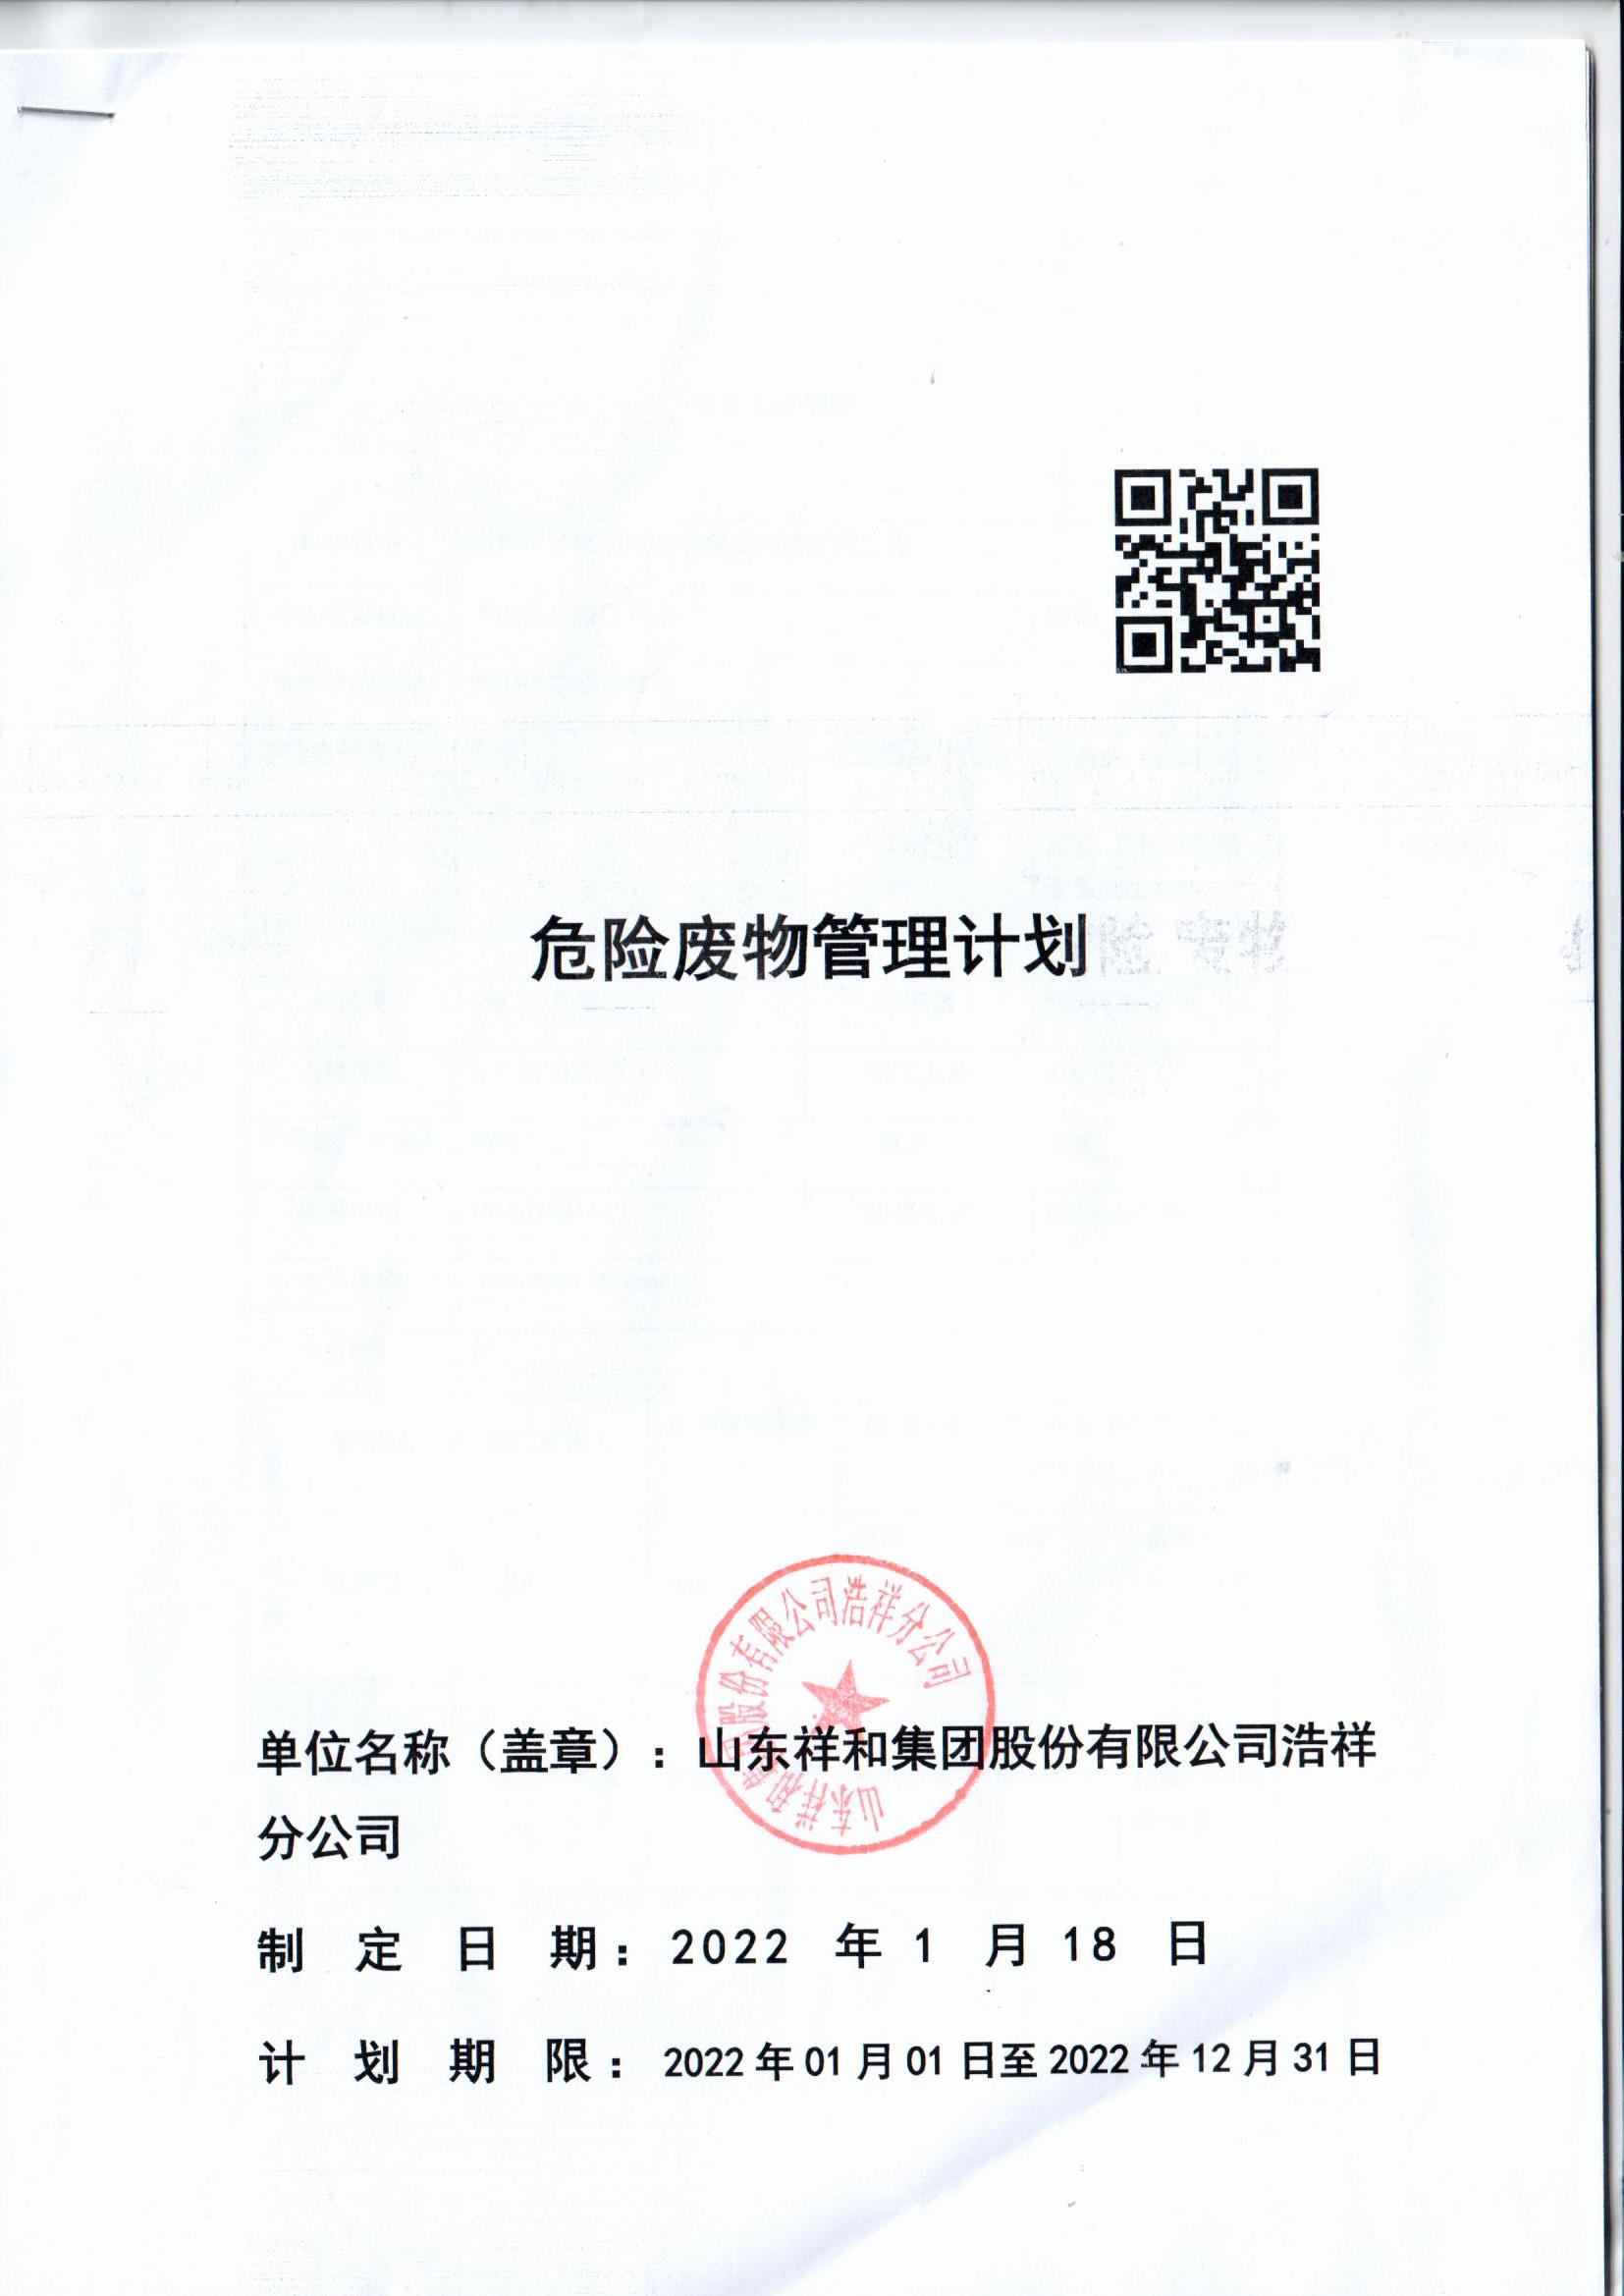 AG大厅游戏官网(中国)AG有限公司集团浩祥分公司2022年度危险废物管理信息公开